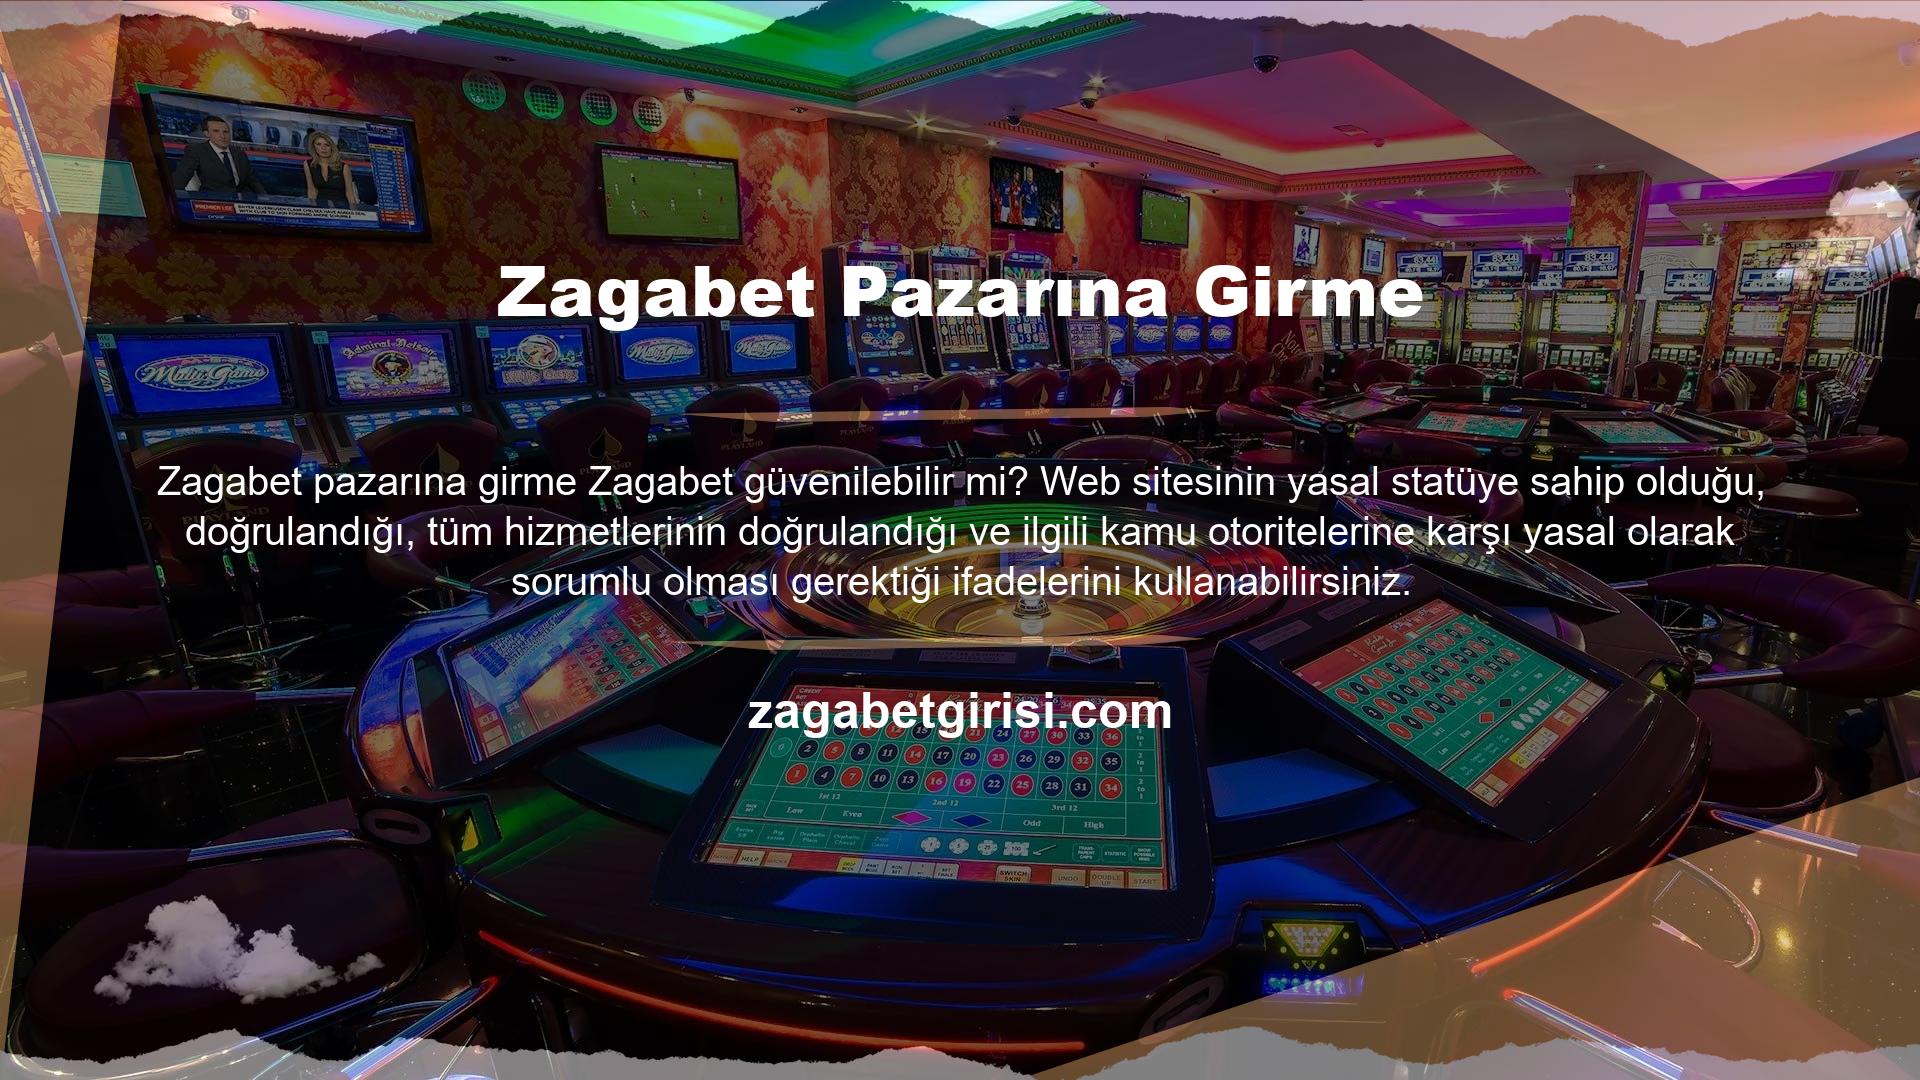 Yabancı casino siteleri, Türkiye pazarına ilk girdiklerinde kullandıkları orijinal adresi kullanamaz